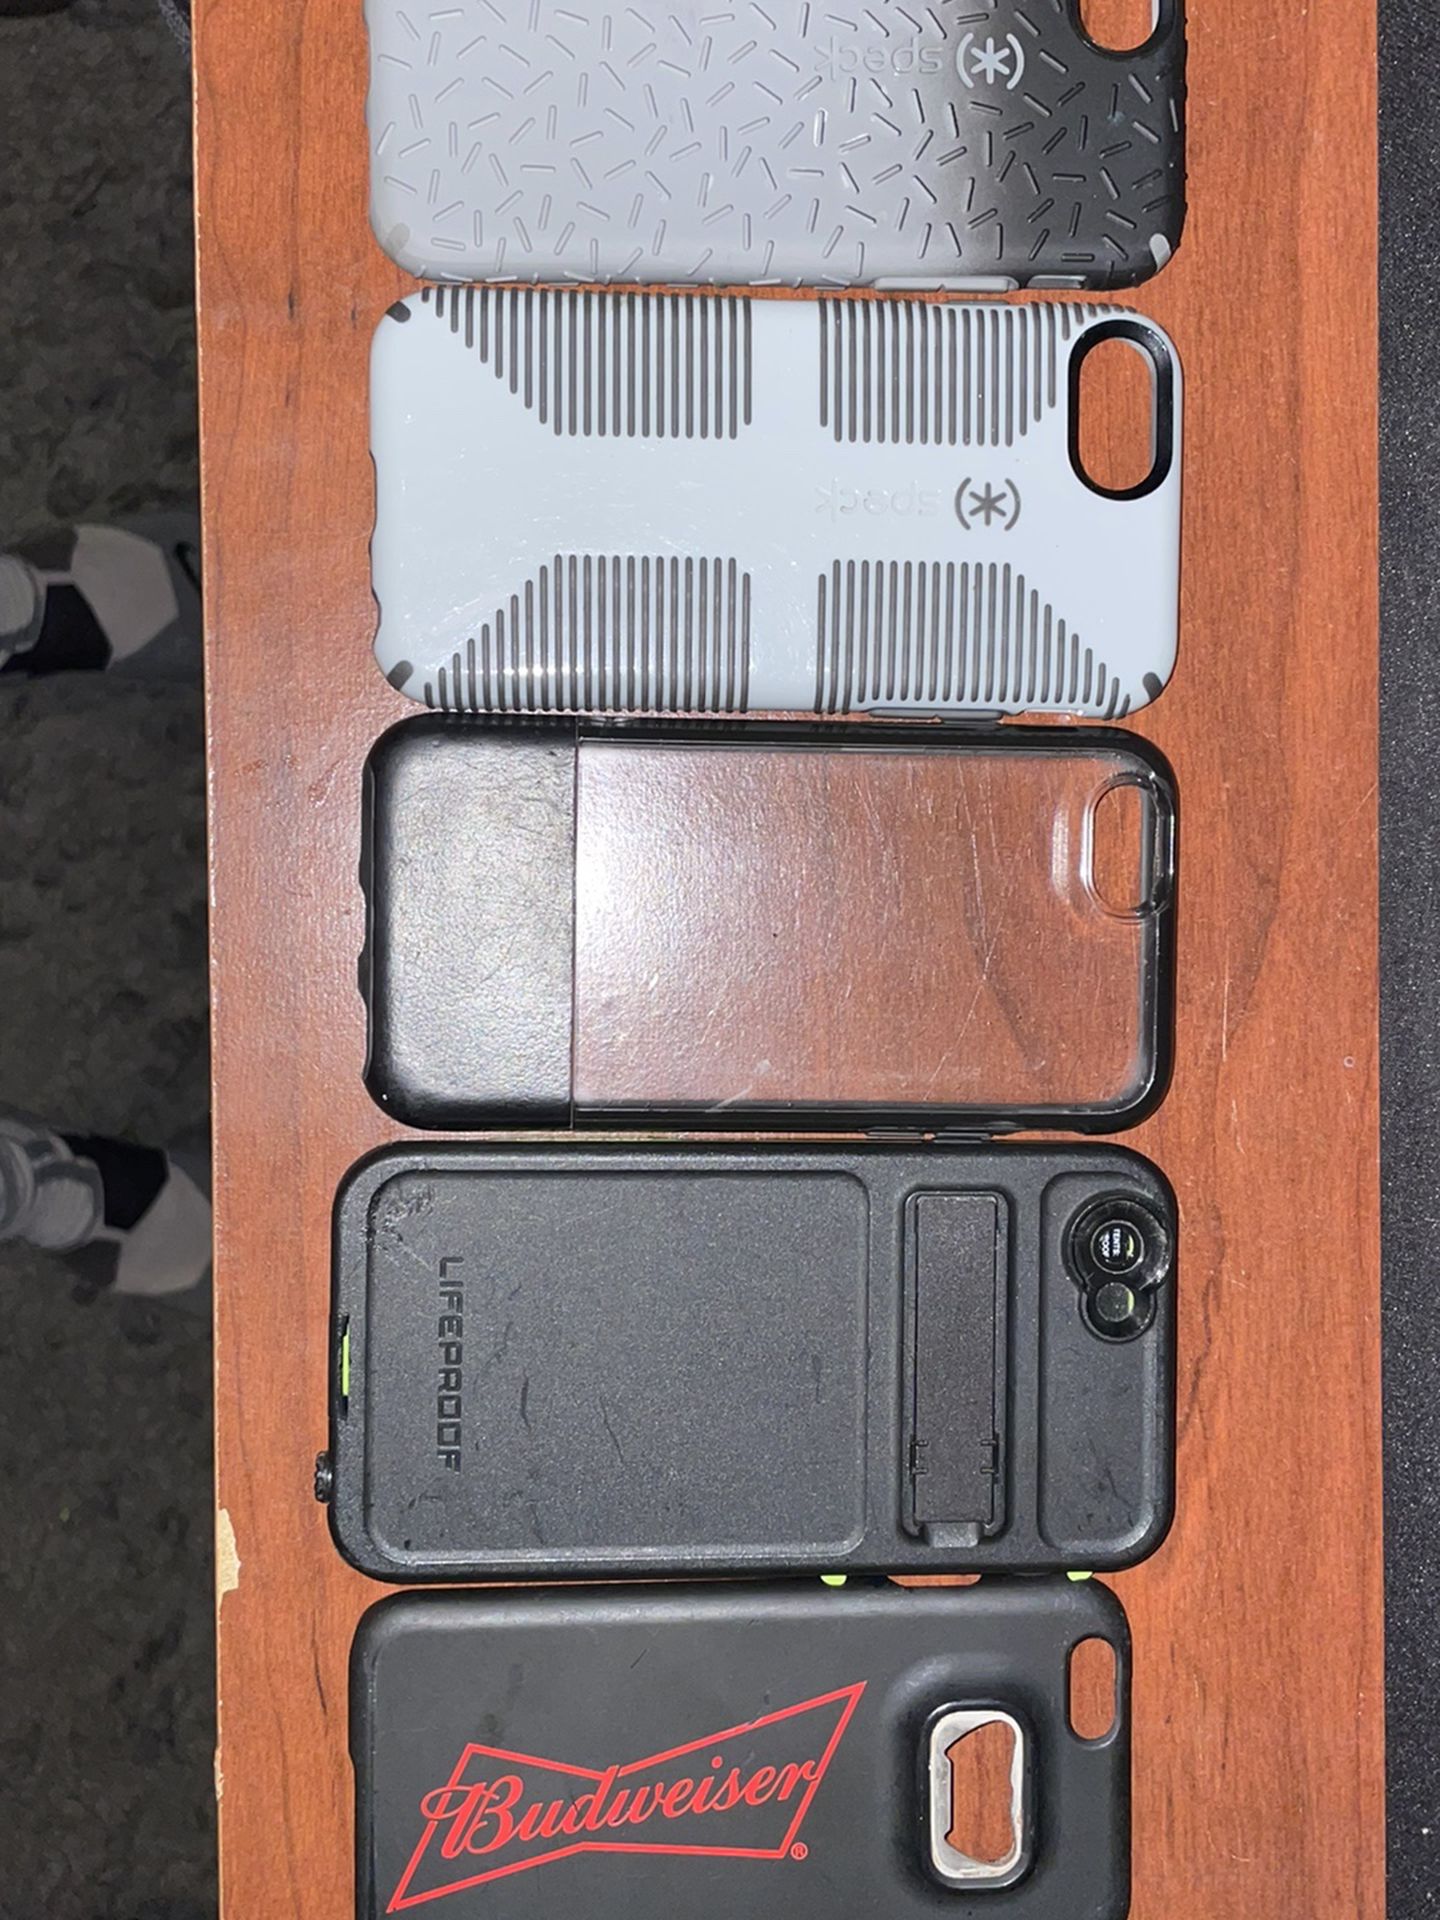 iPhone Cases